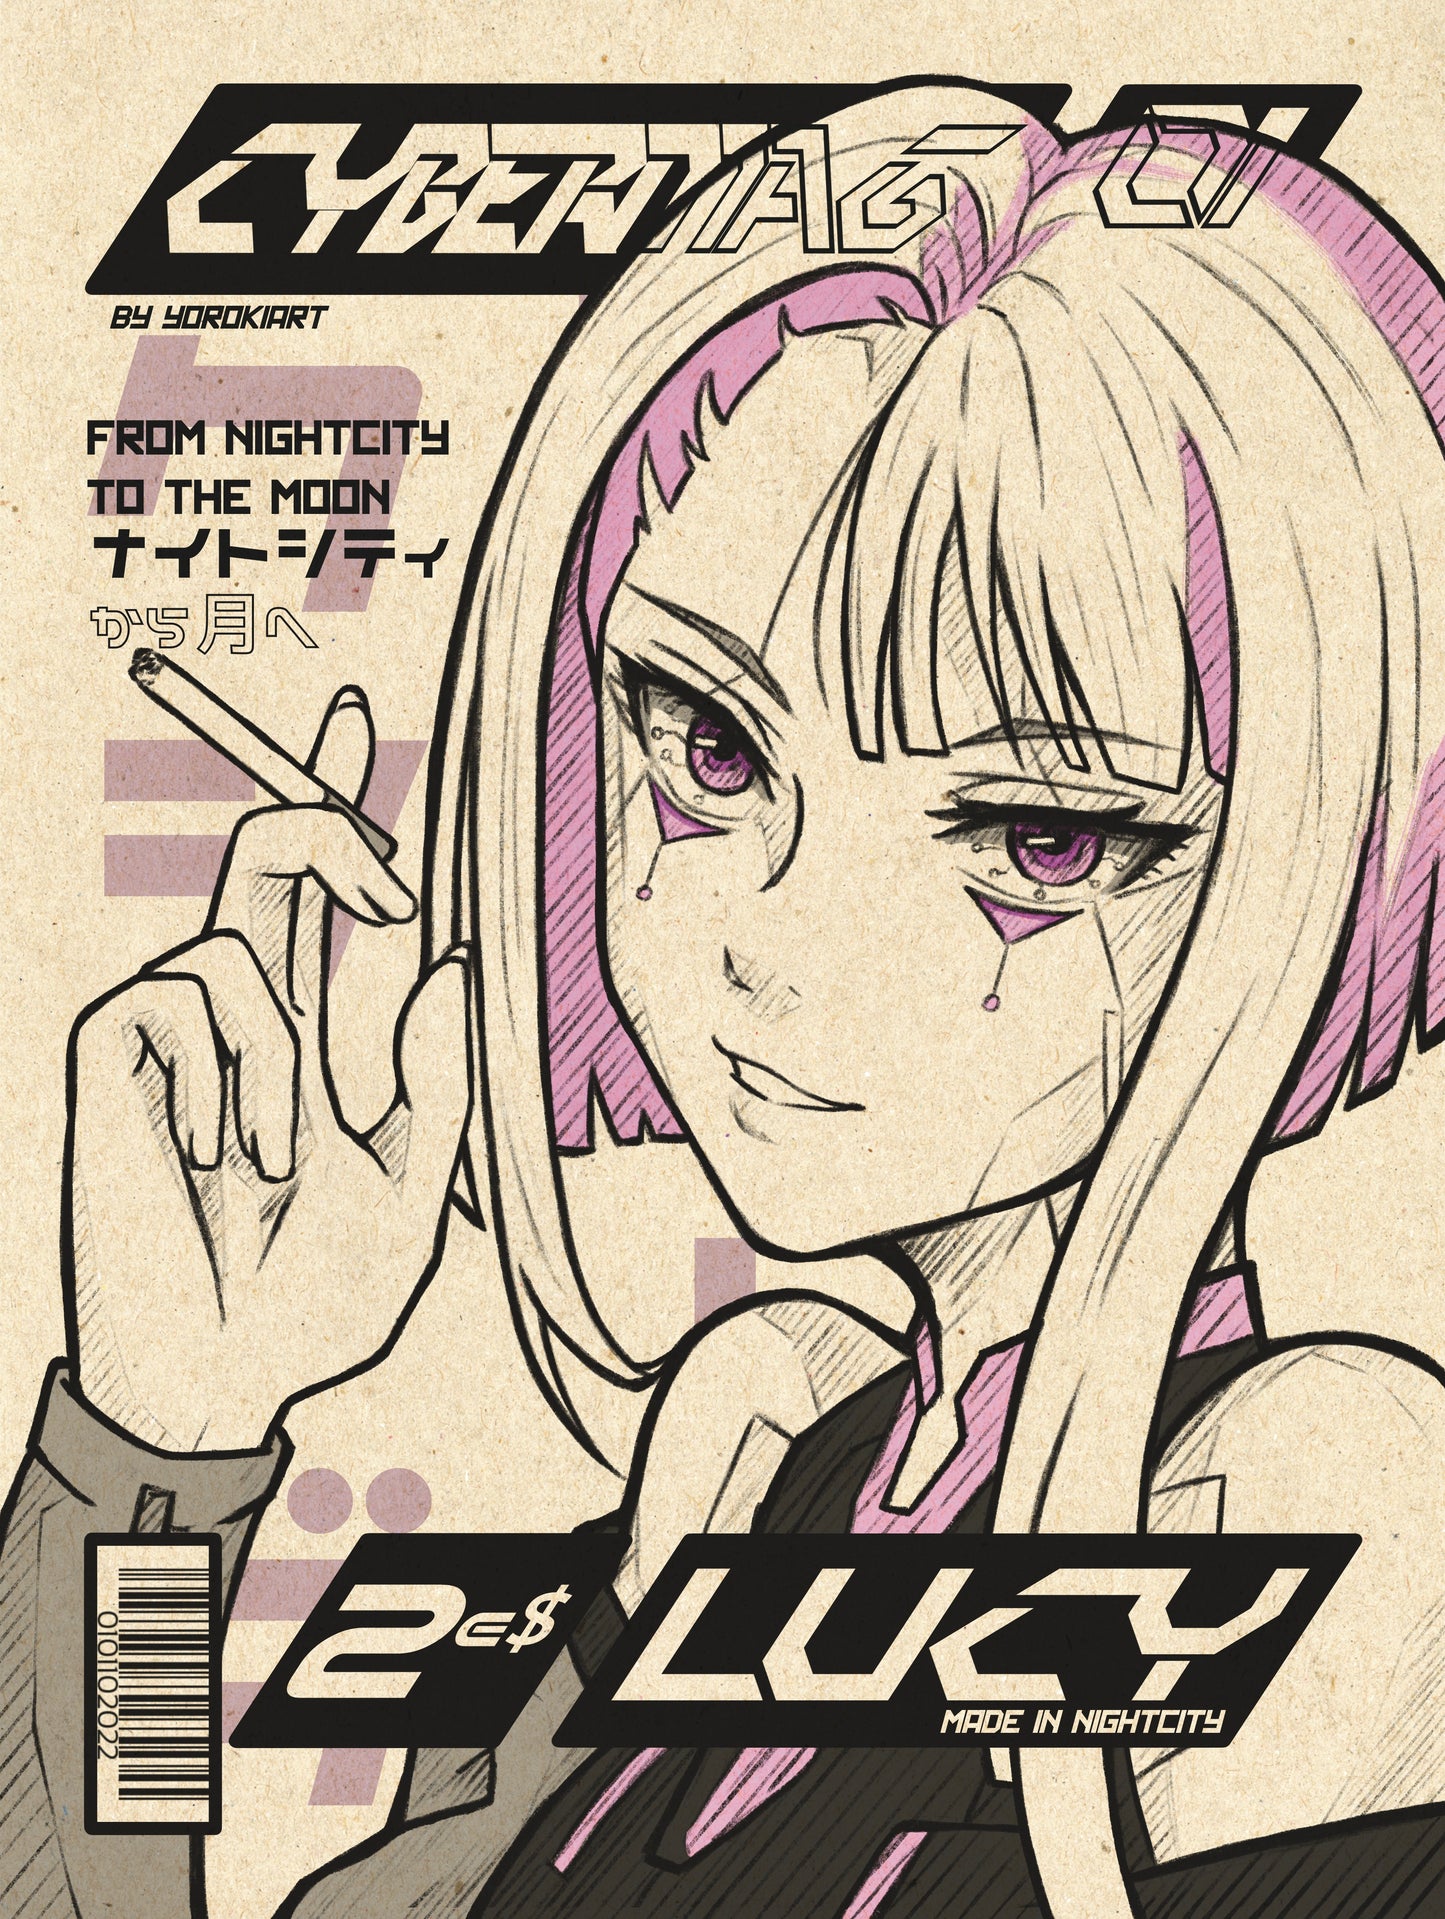 CYBERMAG Nr. 01 Lucy